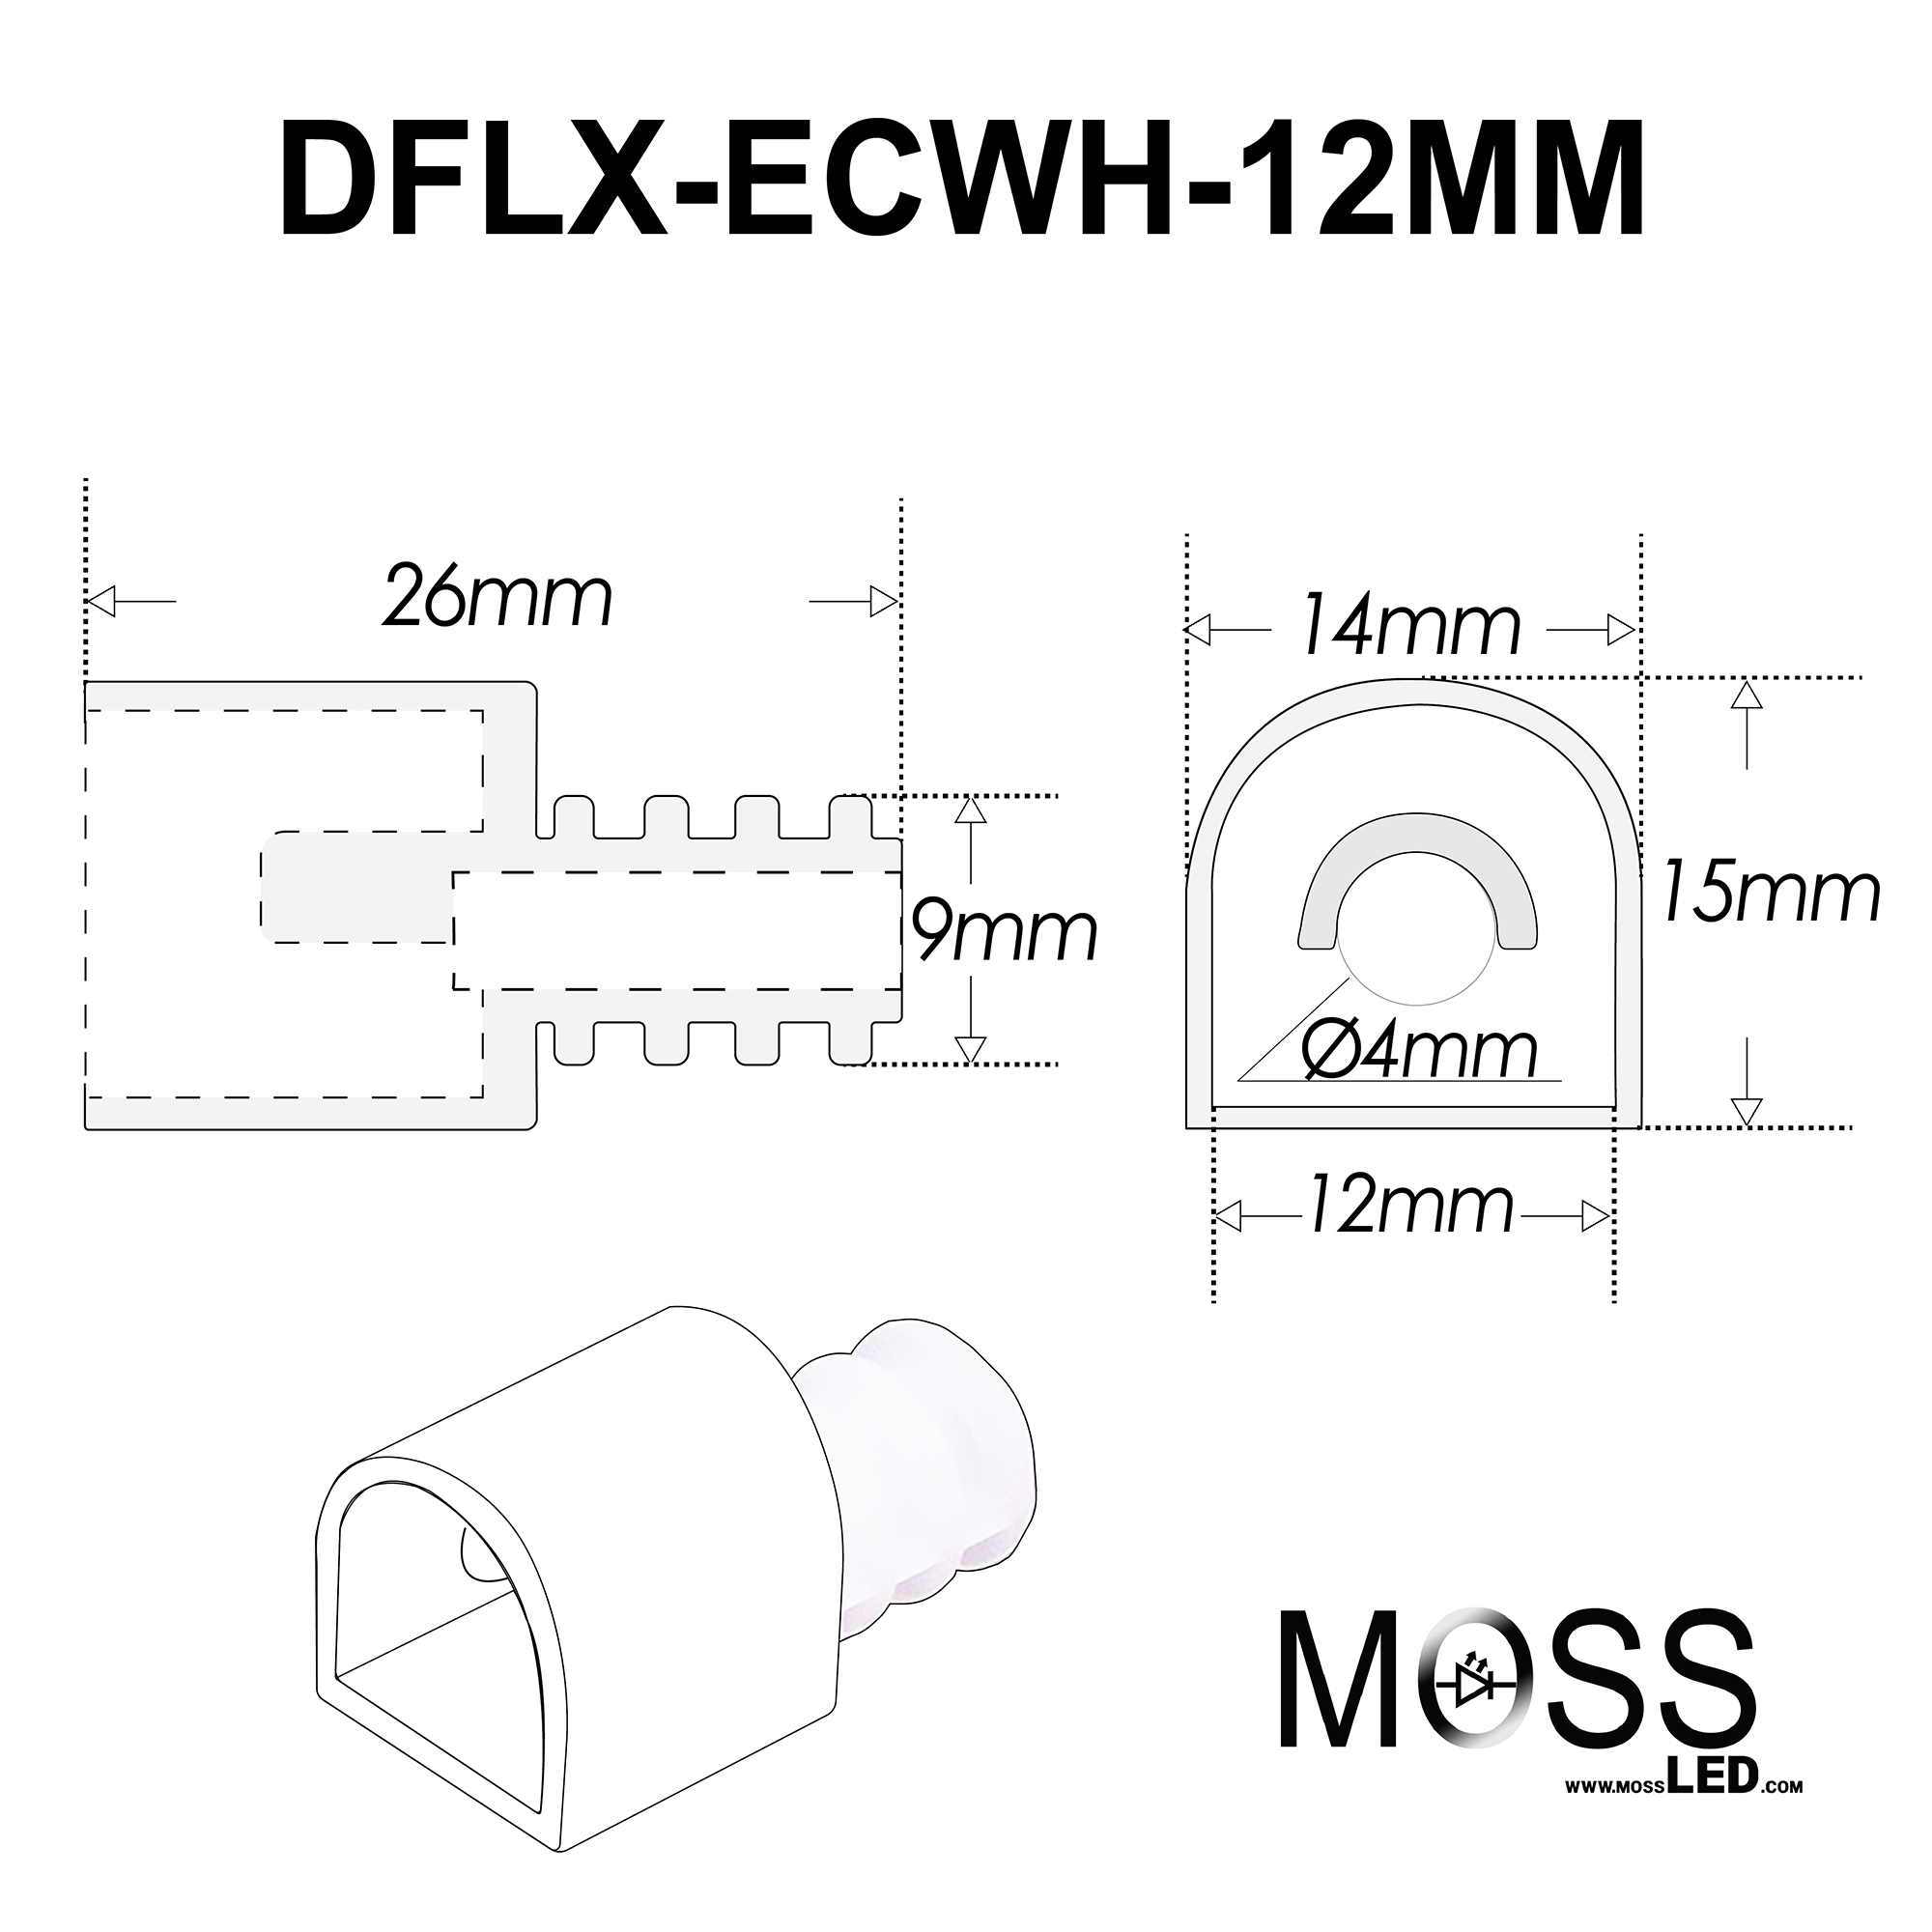 DiffuseFlex LED End Caps